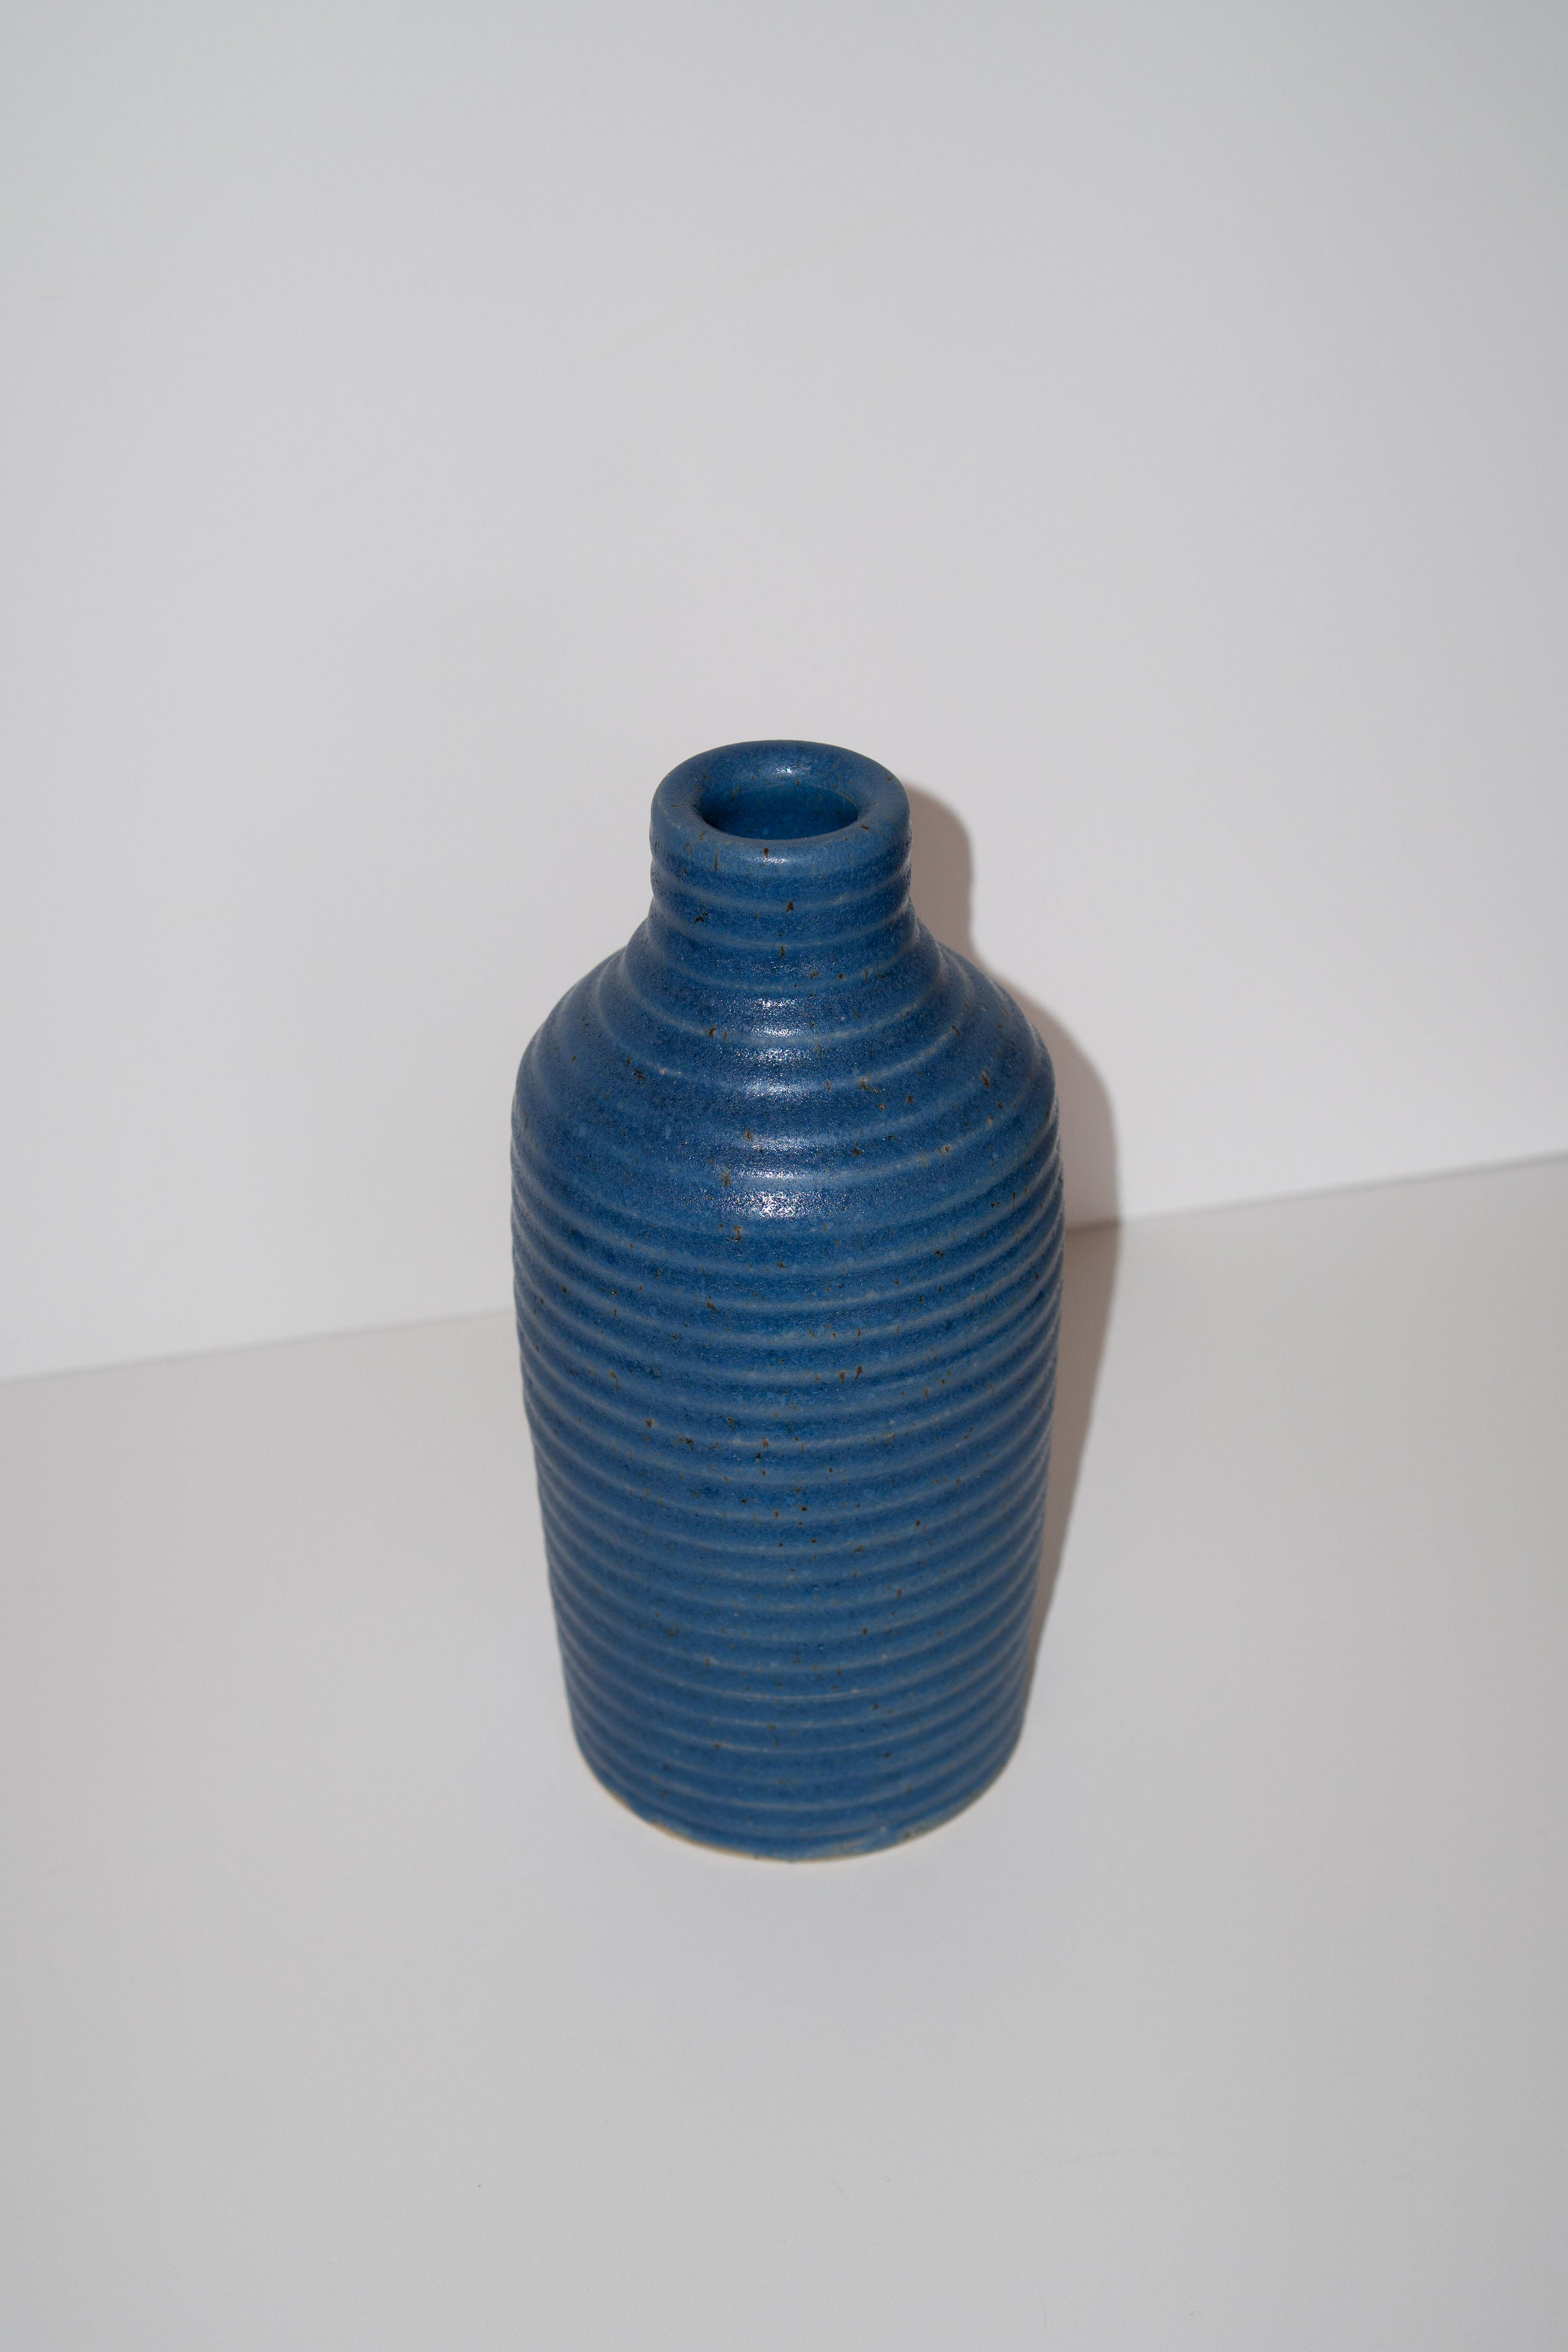 Ribbed Blue Vase